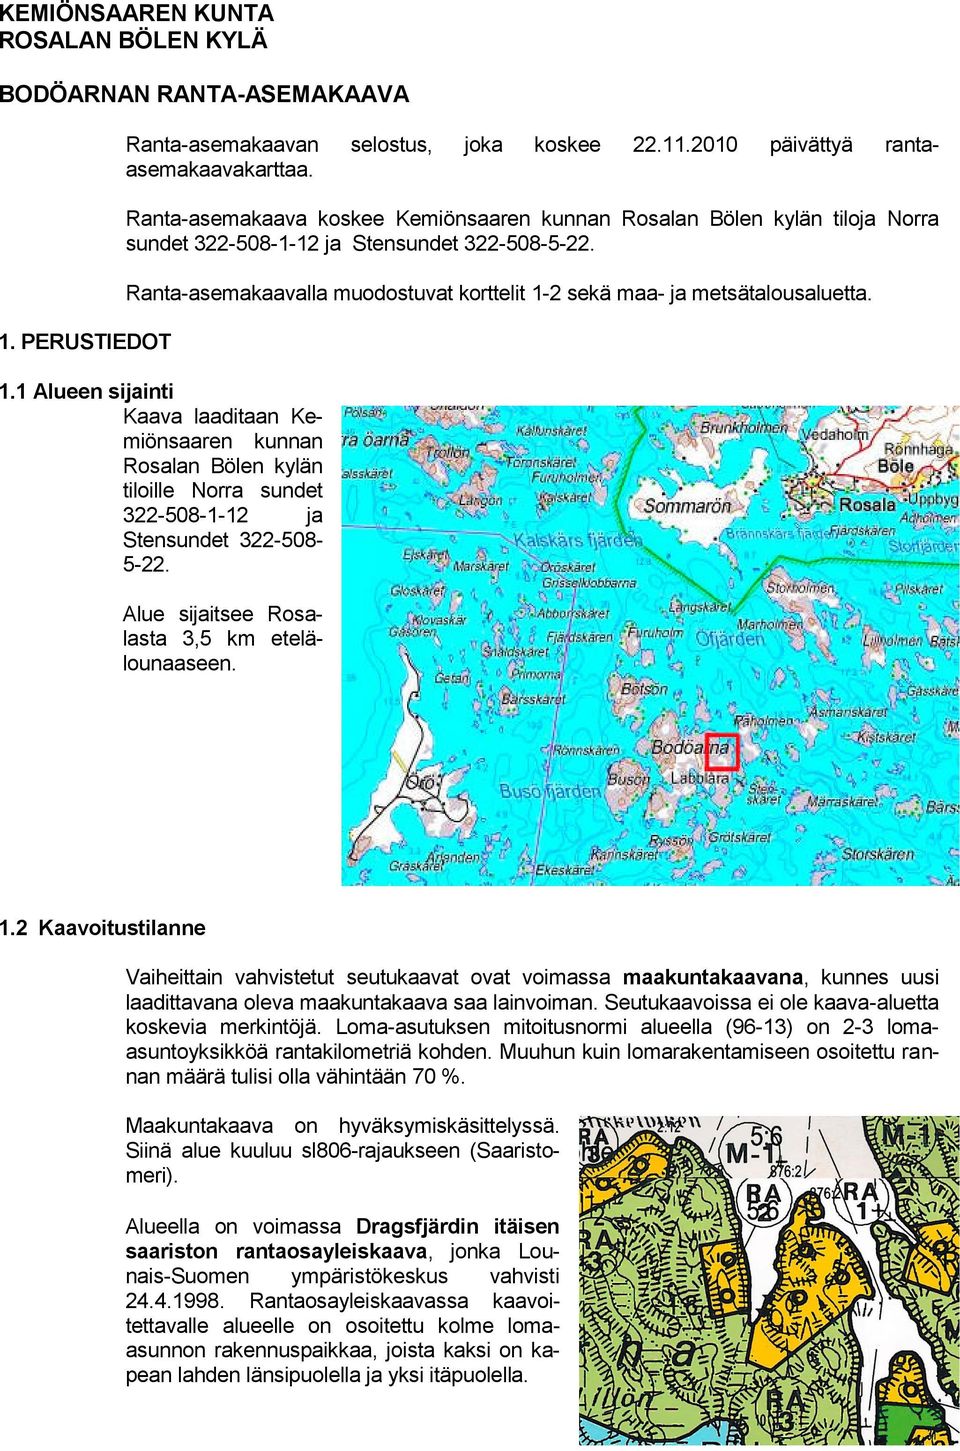 Ranta-asemakaavalla muodostuvat korttelit 1-2 sekä maa- ja metsätalousaluetta. 1.1 Alueen sijainti Kaava laaditaan Kemiönsaaren kunnan Rosalan Bölen kylän tiloille Norra sundet 322-508-1-12 ja Stensundet 322-508- 5-22.